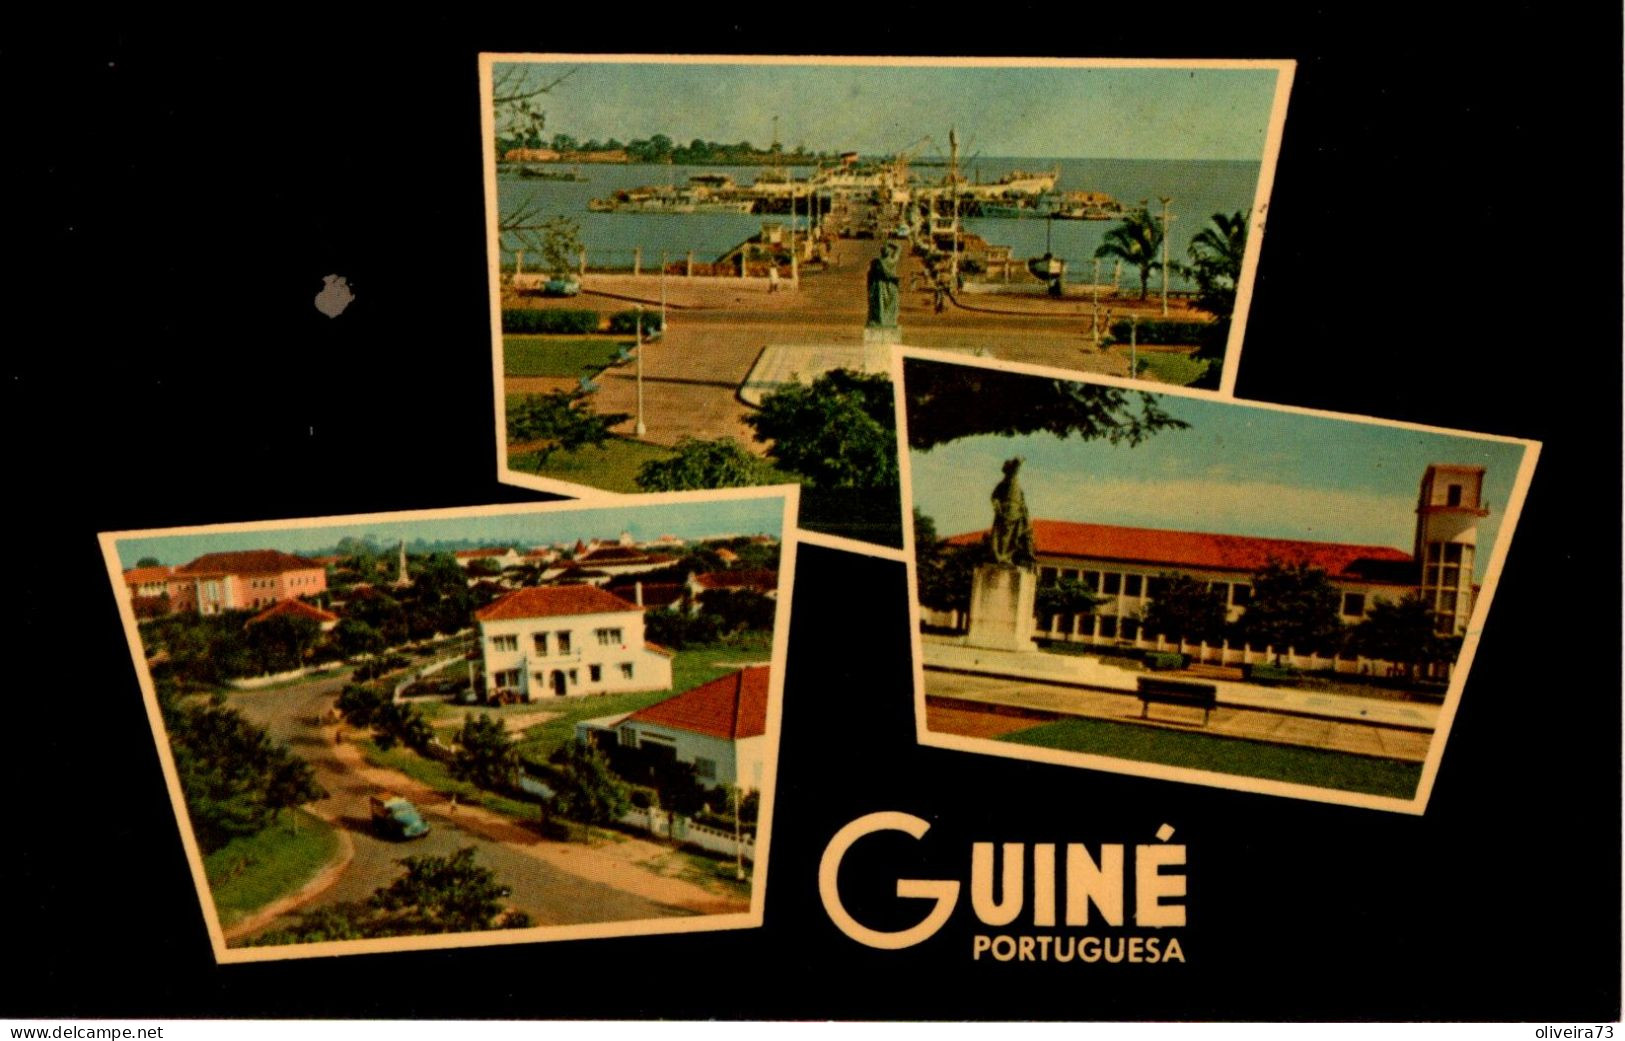 GUINÉ - PORTUGUESA - Guinea-Bissau